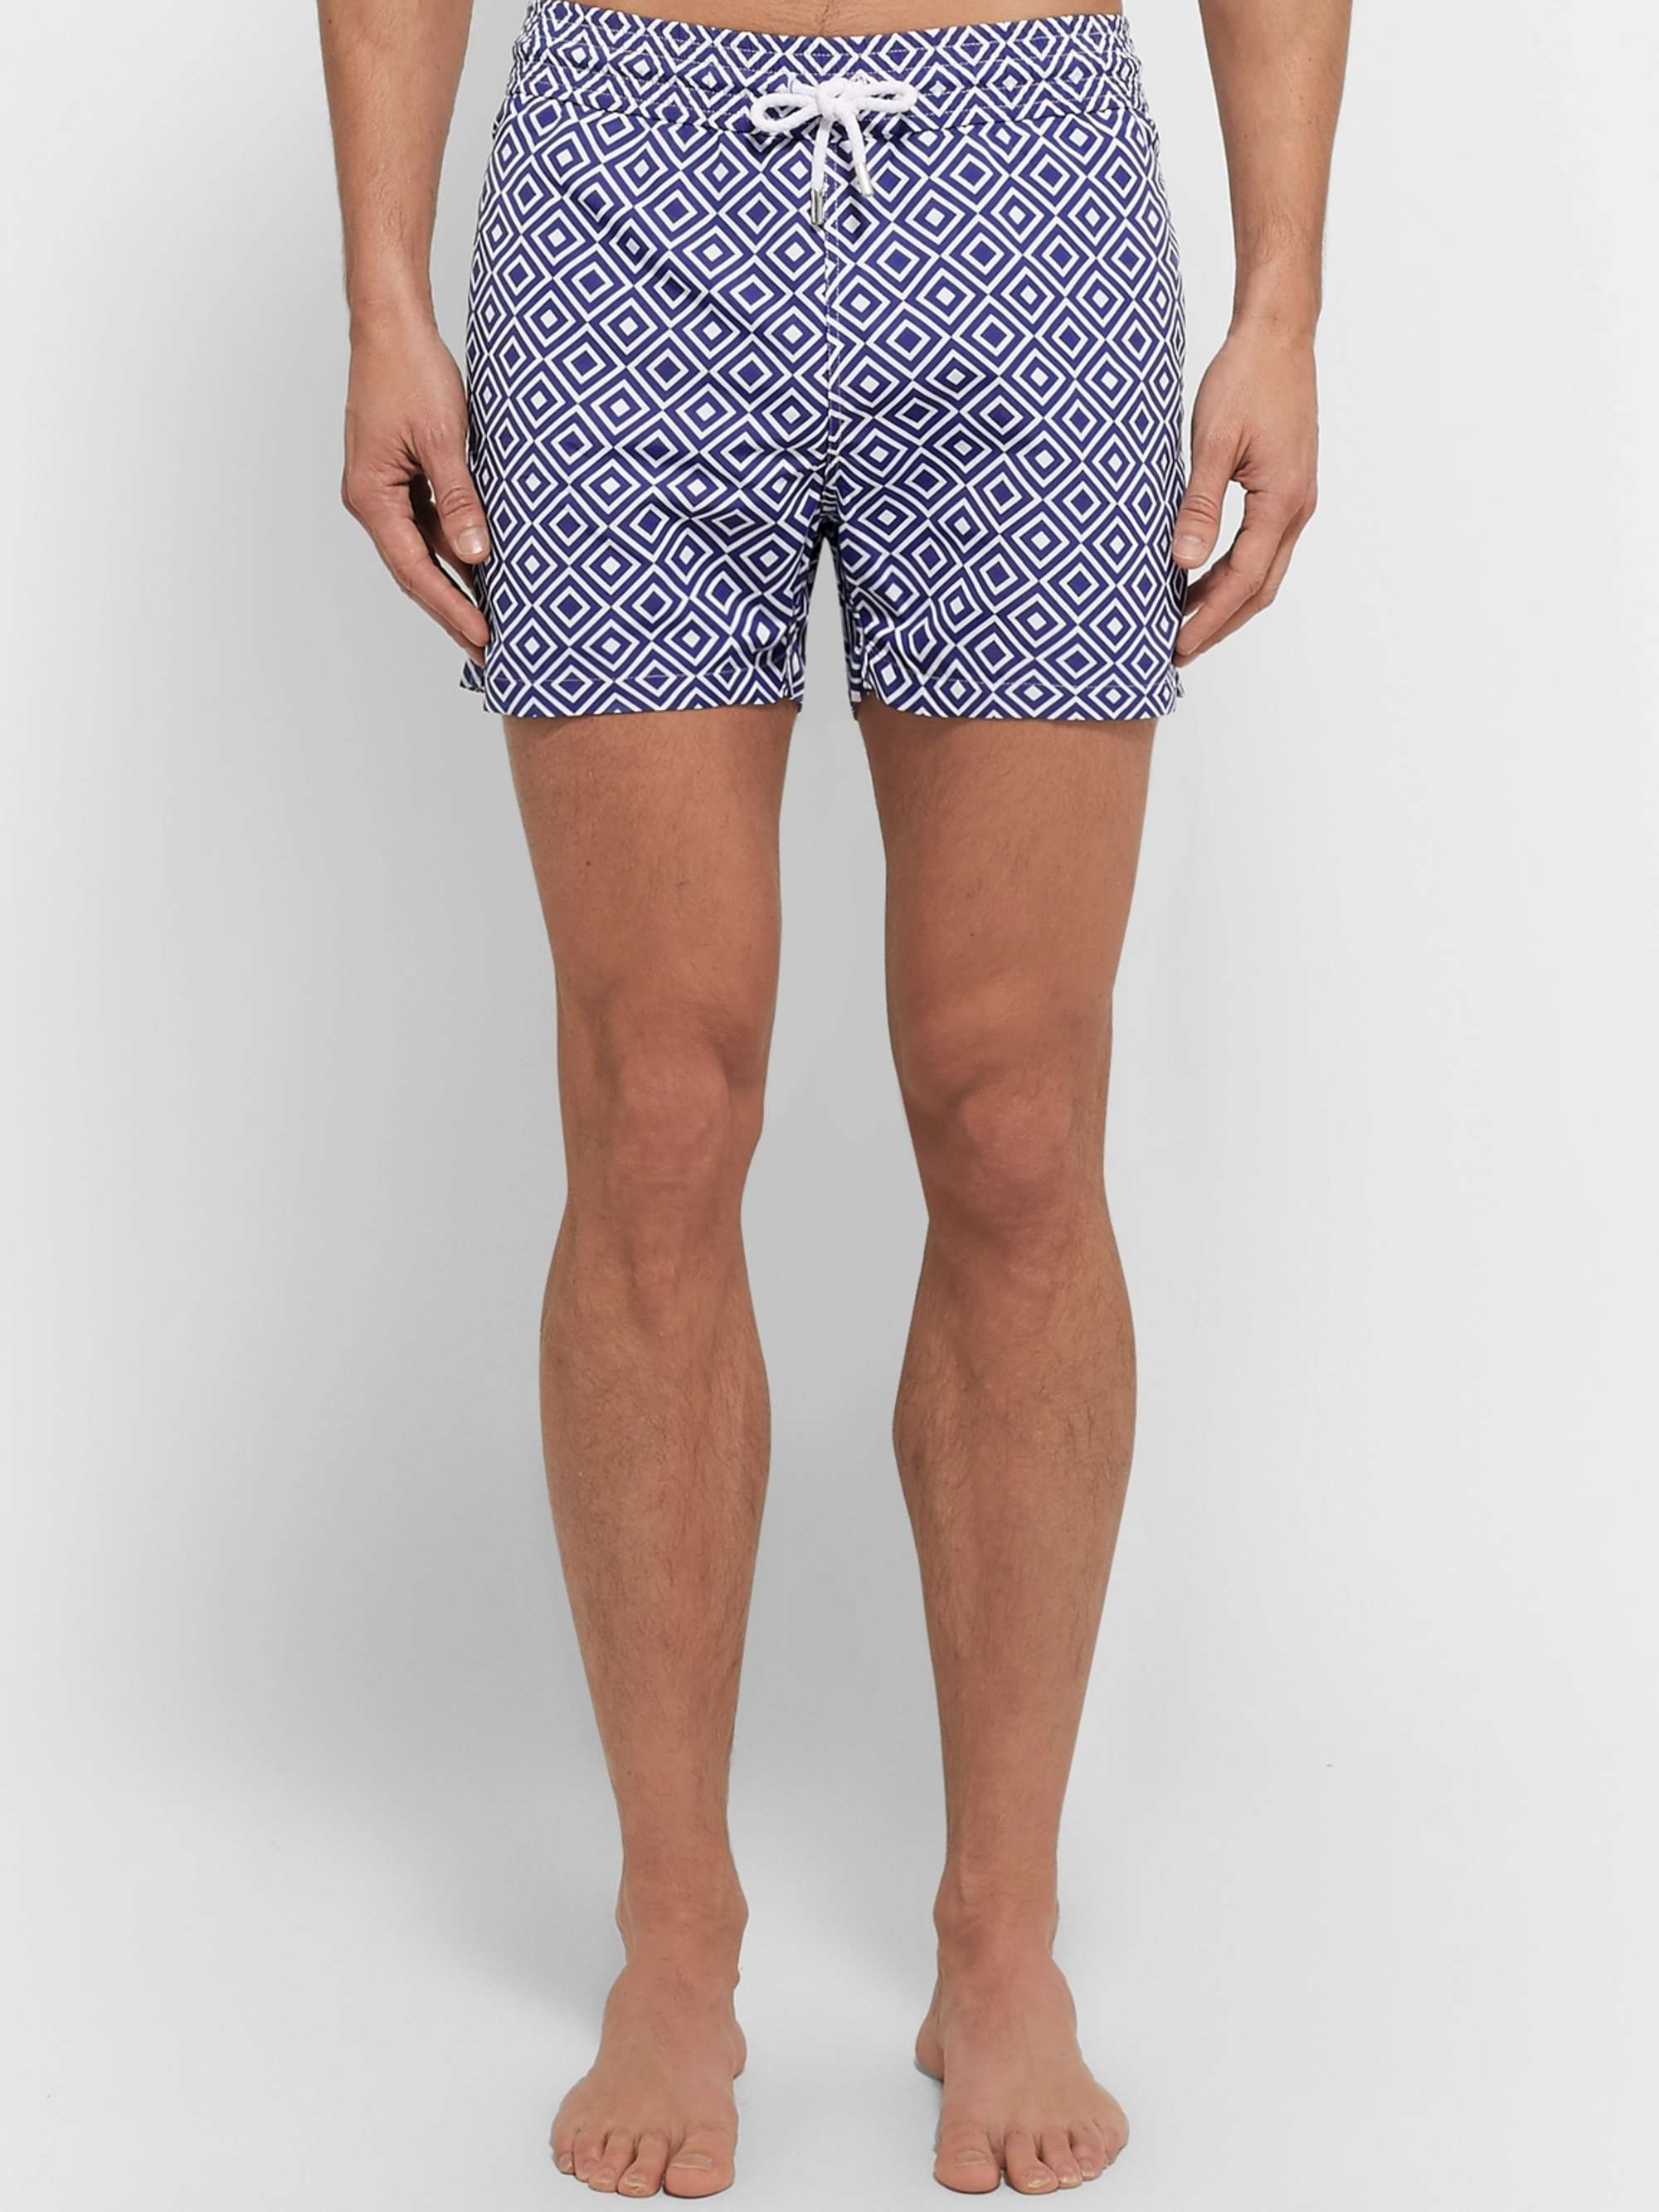 FRESCOBOL CARIOCA Angra Slim-Fit Short-Length Printed Swim Shorts for Men |  MR PORTER